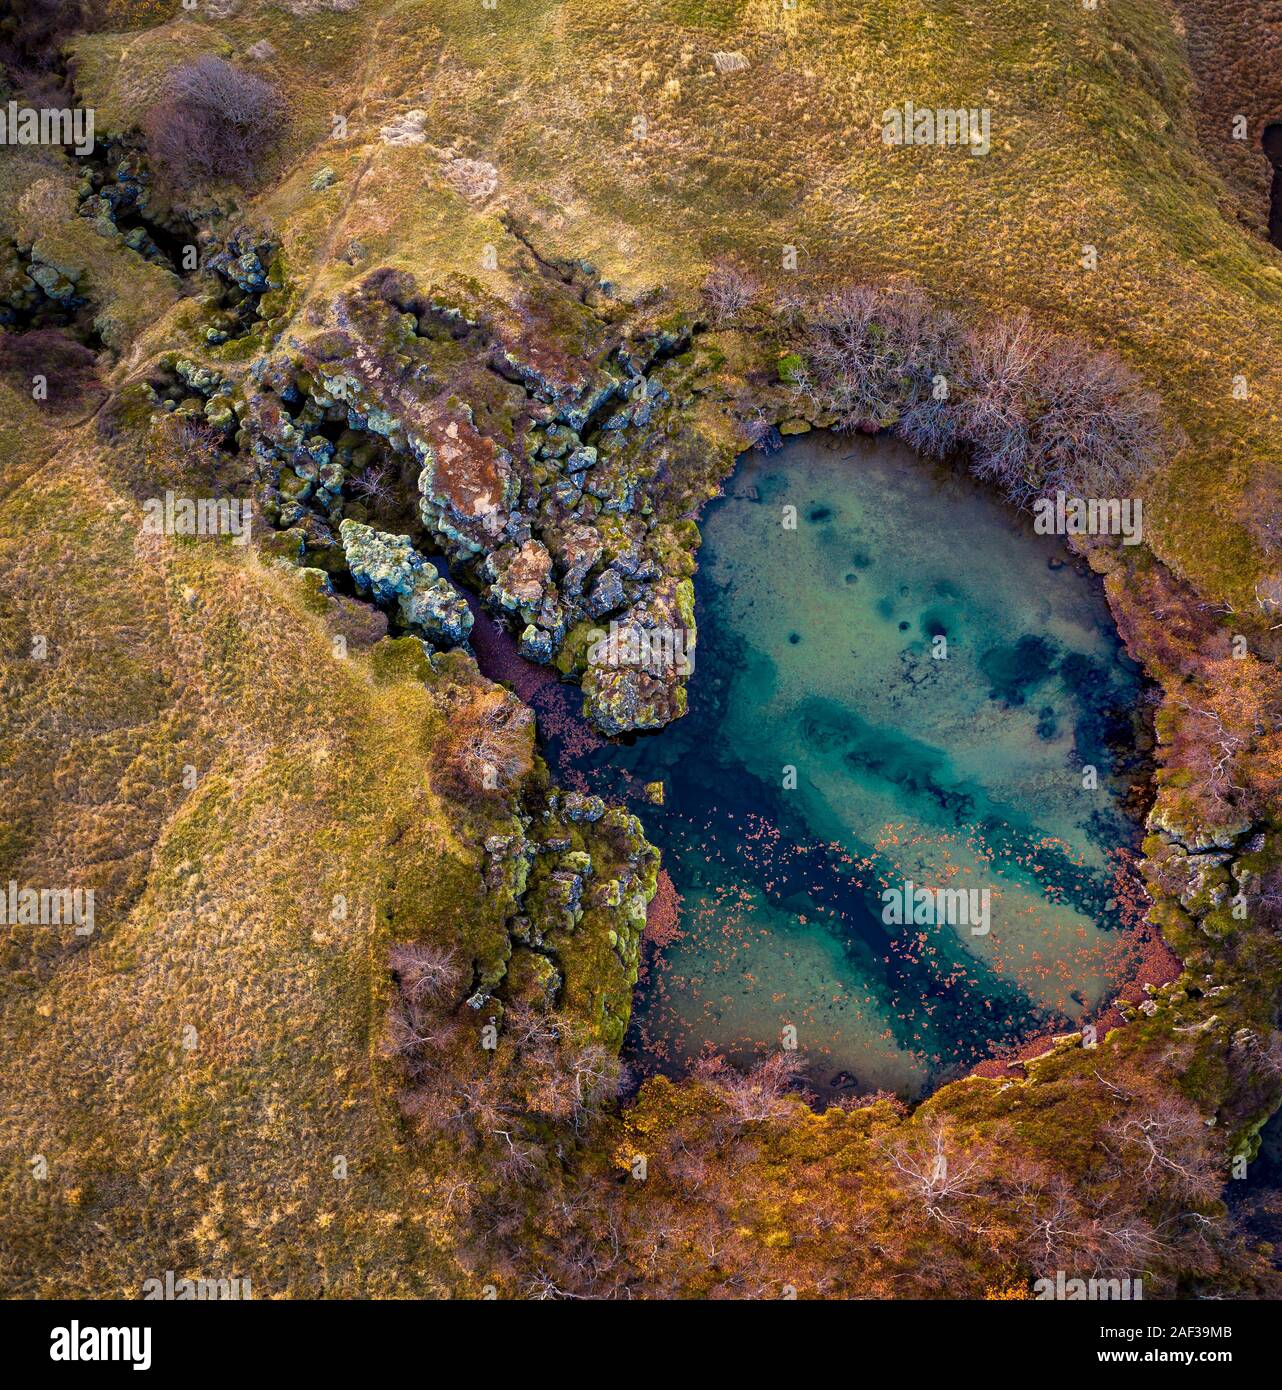 Flosagja-volcanique du rift en fonction le Parc National de Thingvellir, site du patrimoine mondial de l'UNESCO, de l'Islande. Banque D'Images